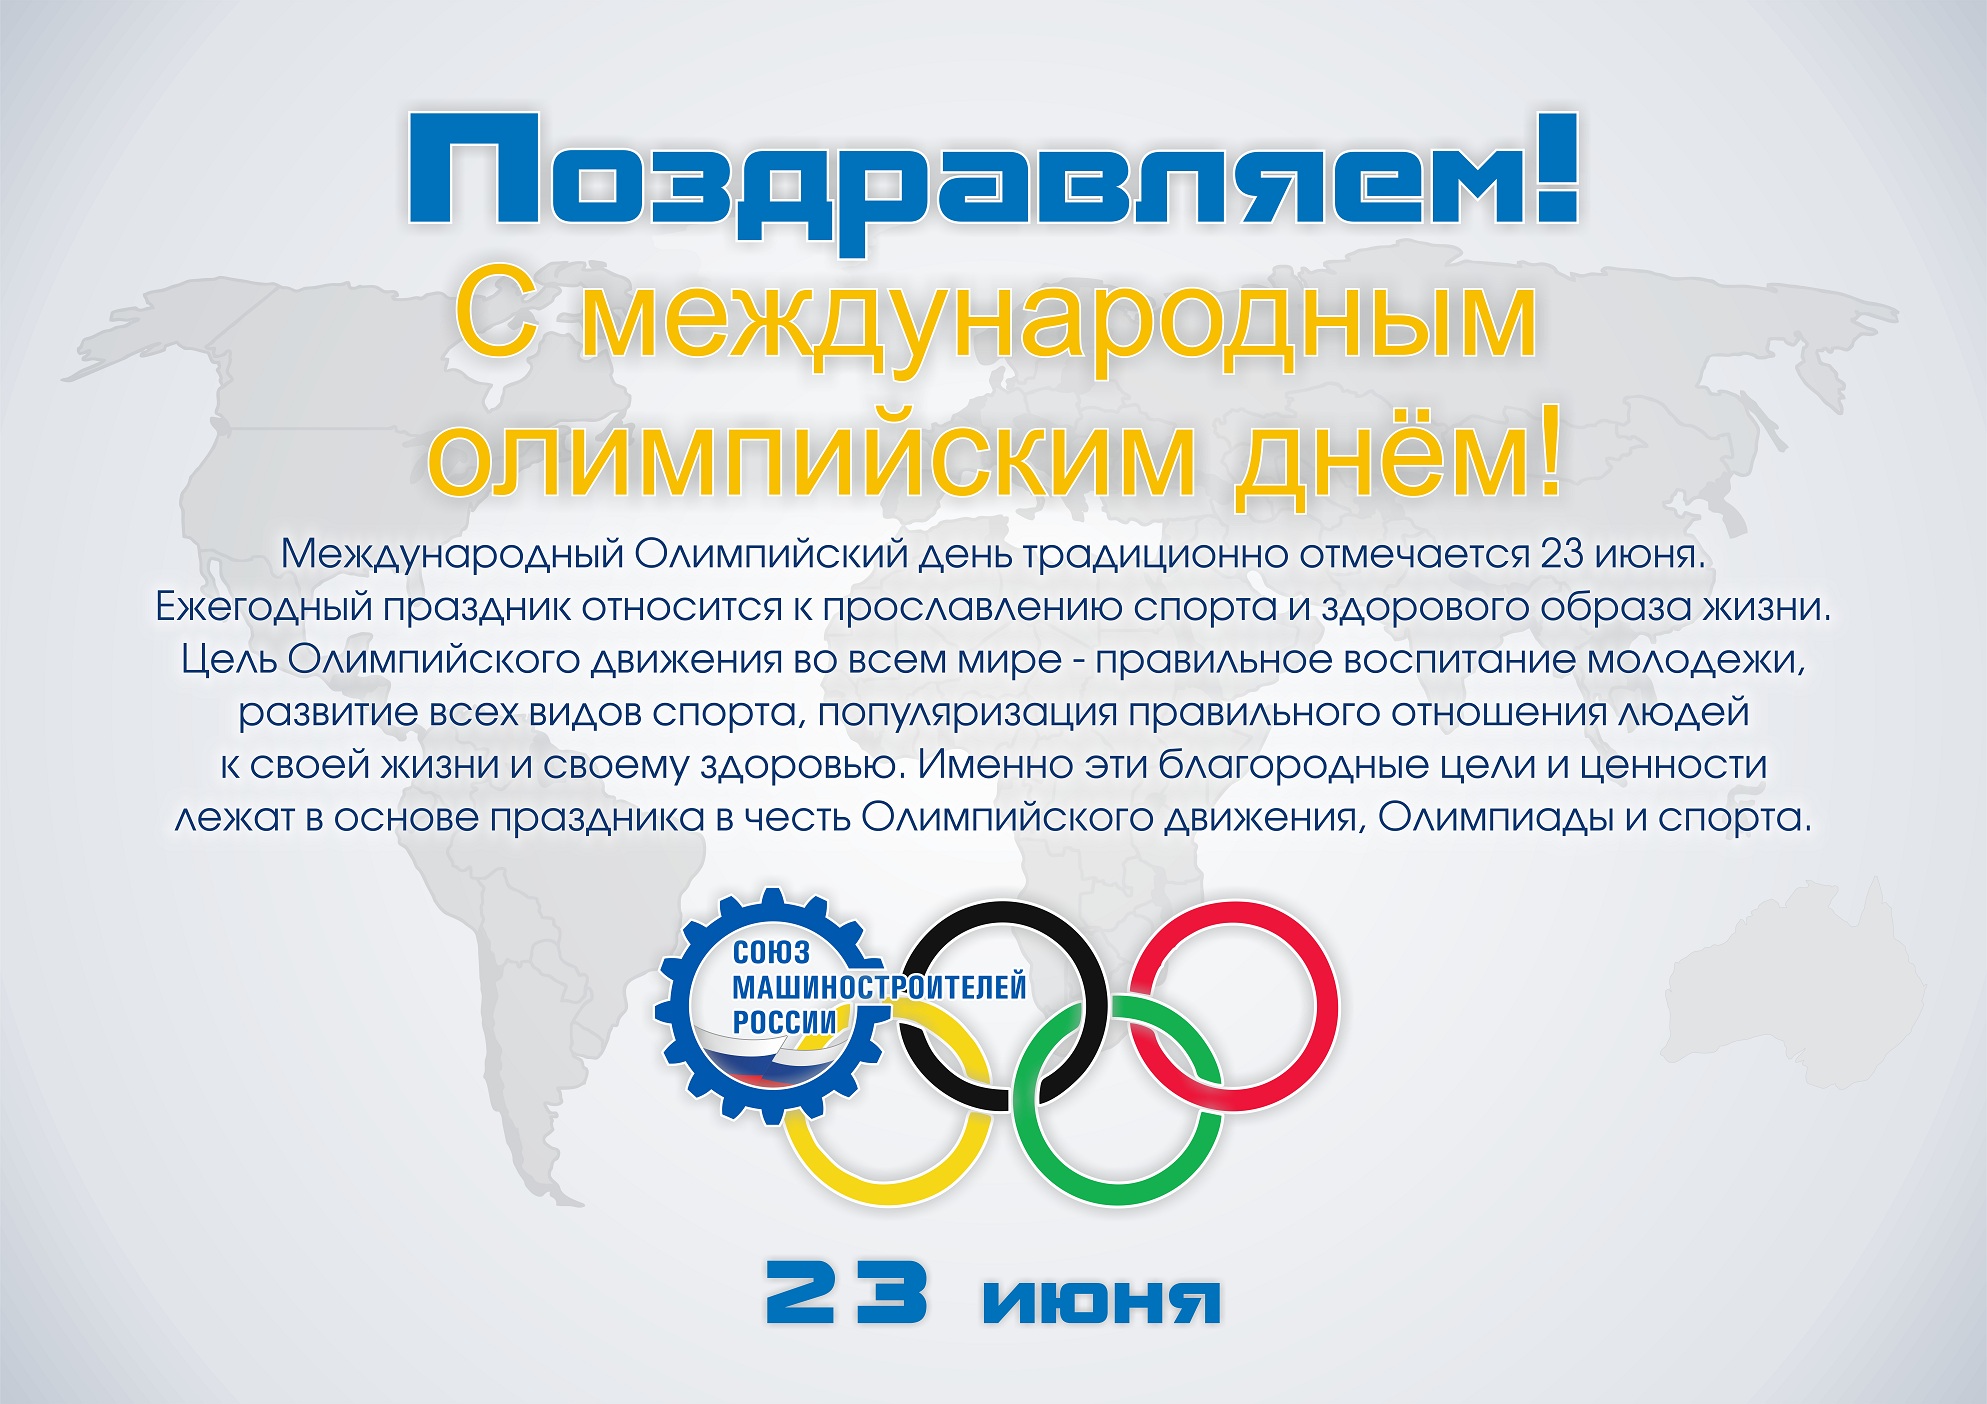 16 июня 23 июня. Международный Олимпийский день. 23 Июня Международный Олимпийский день. Международныхолимпийскиц день. Международный Олимпийский день поздравления.